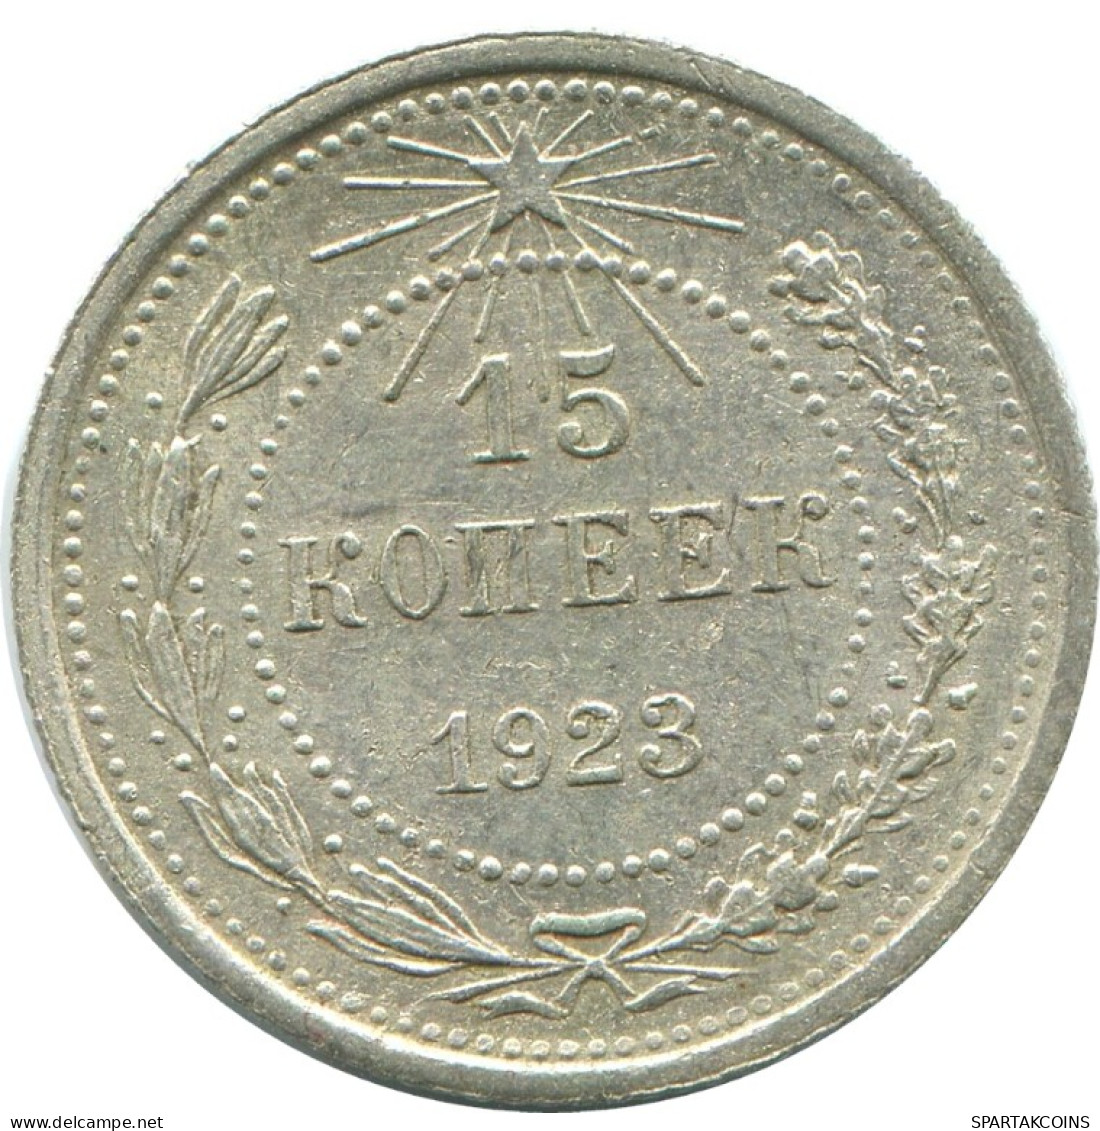 15 KOPEKS 1923 RUSSLAND RUSSIA RSFSR SILBER Münze HIGH GRADE #AF052.4.D.A - Russia